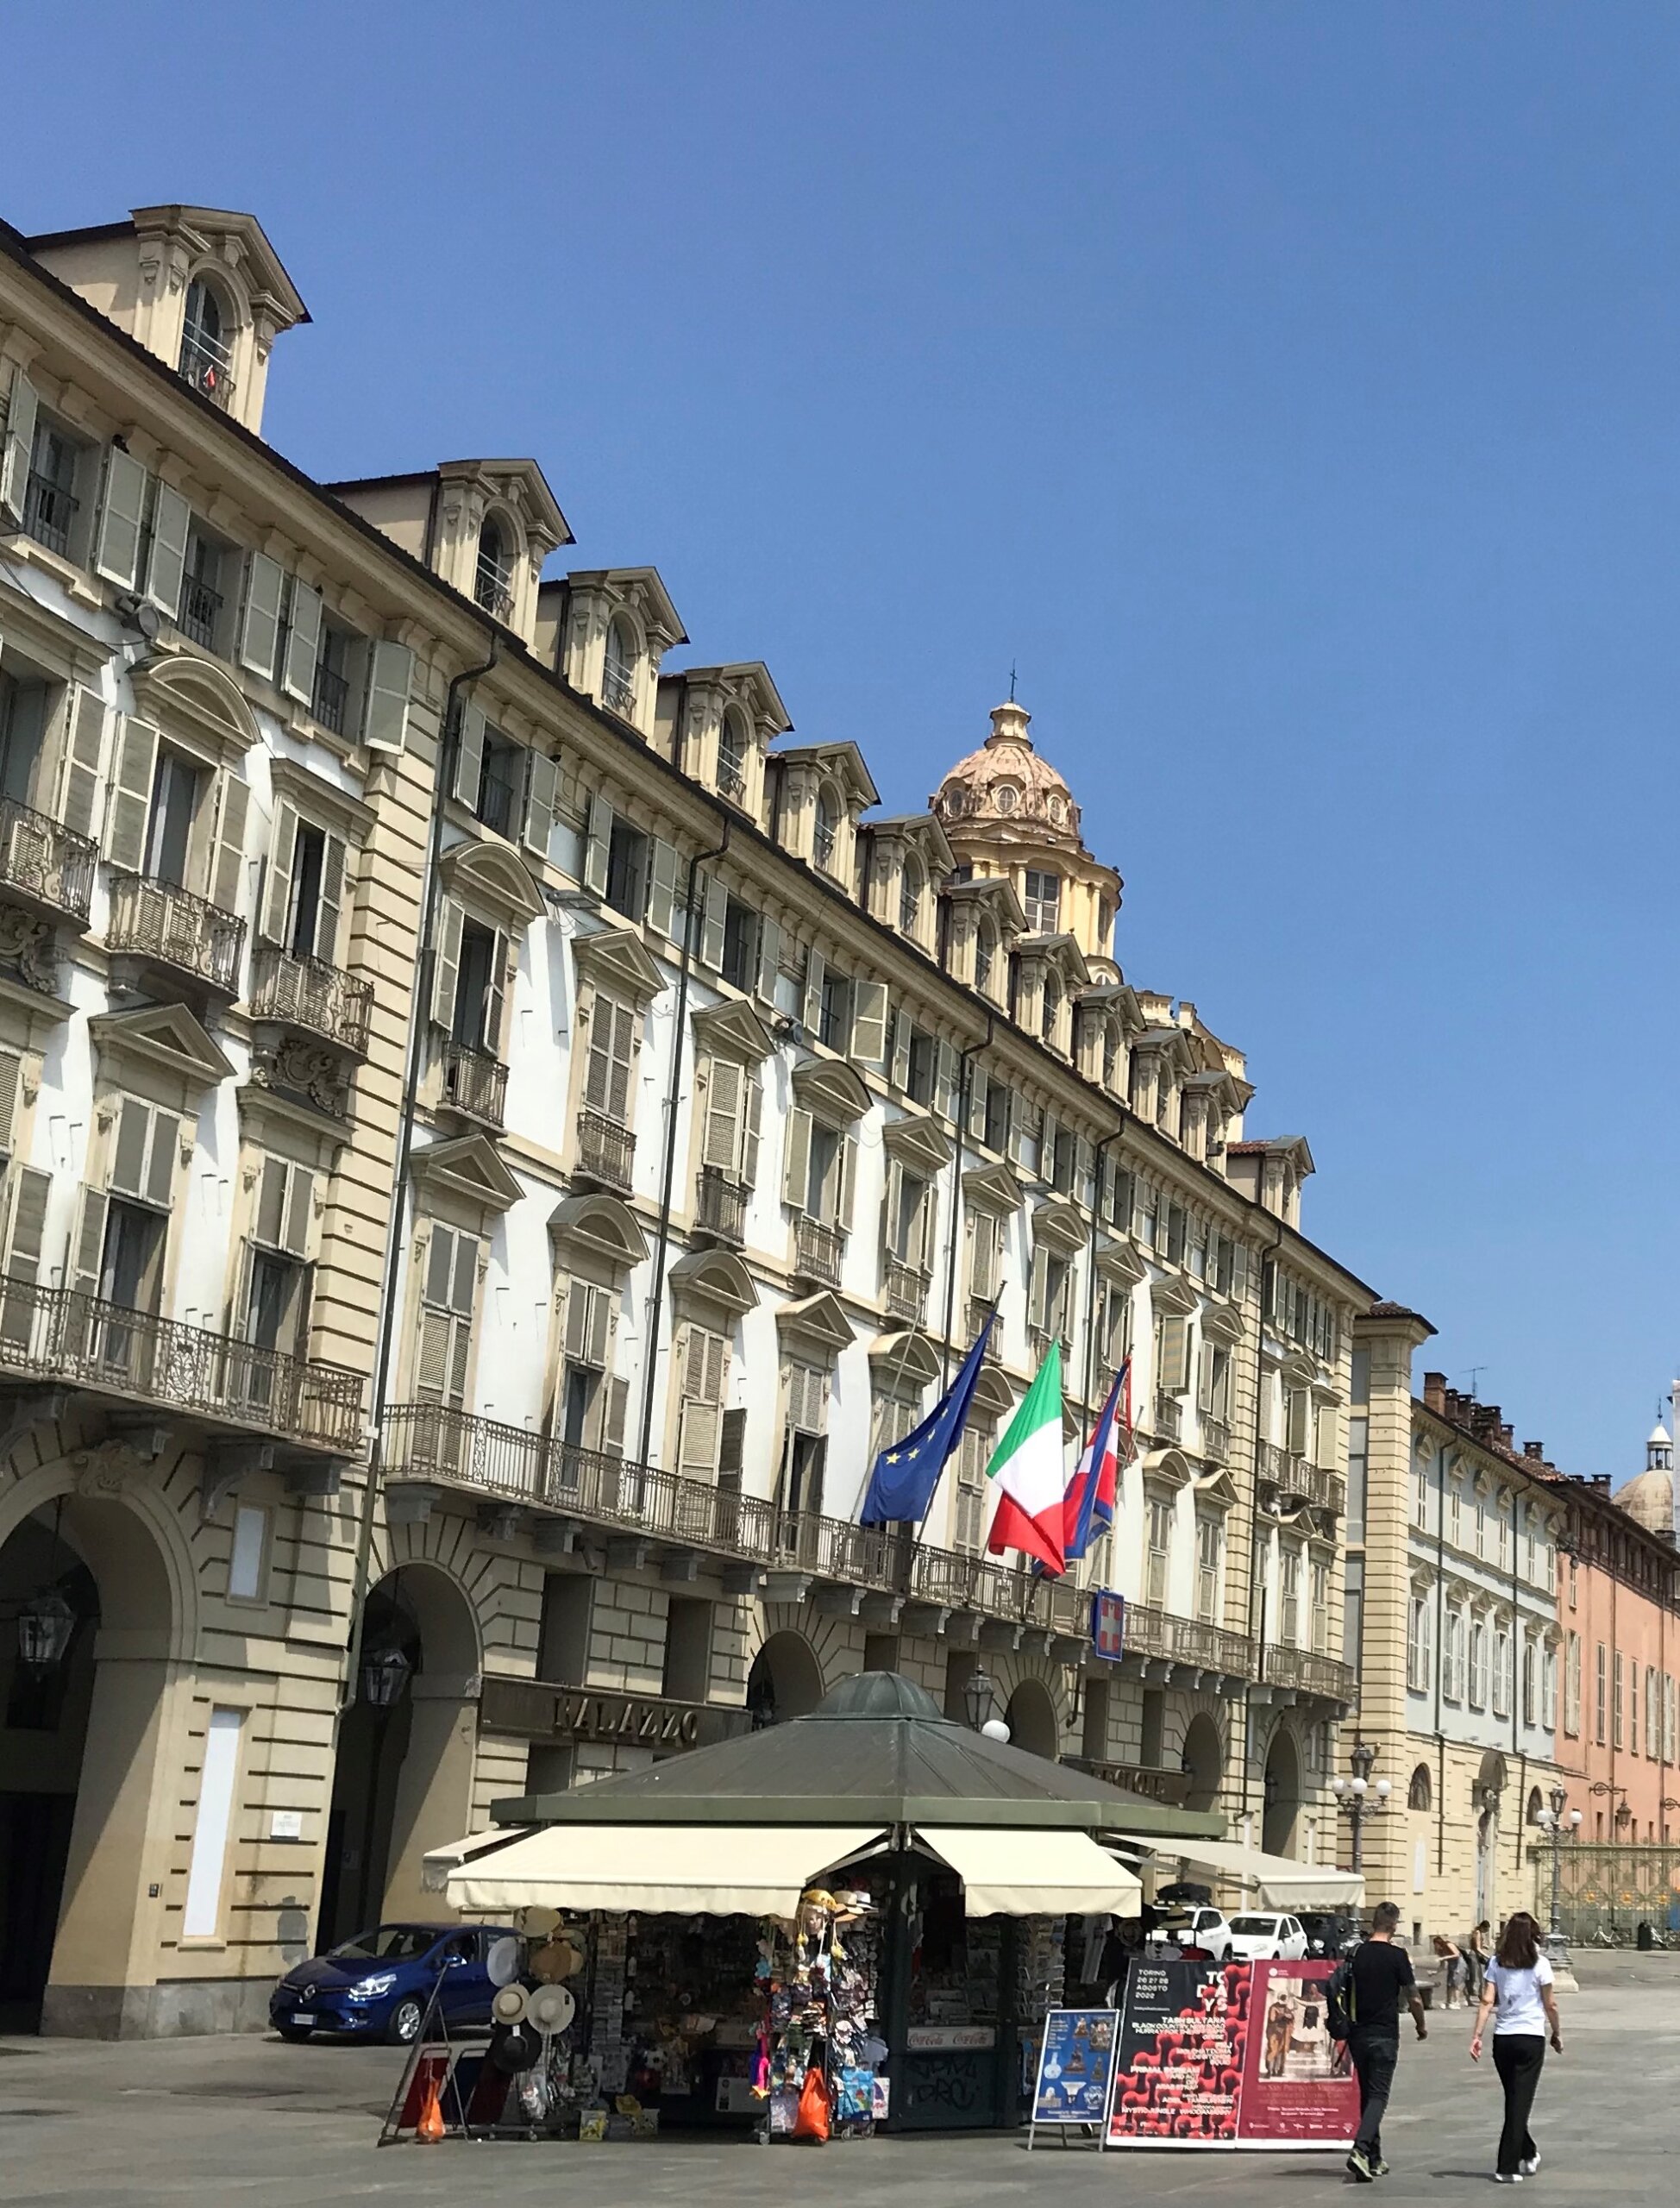 L'edicola - hier in Turin